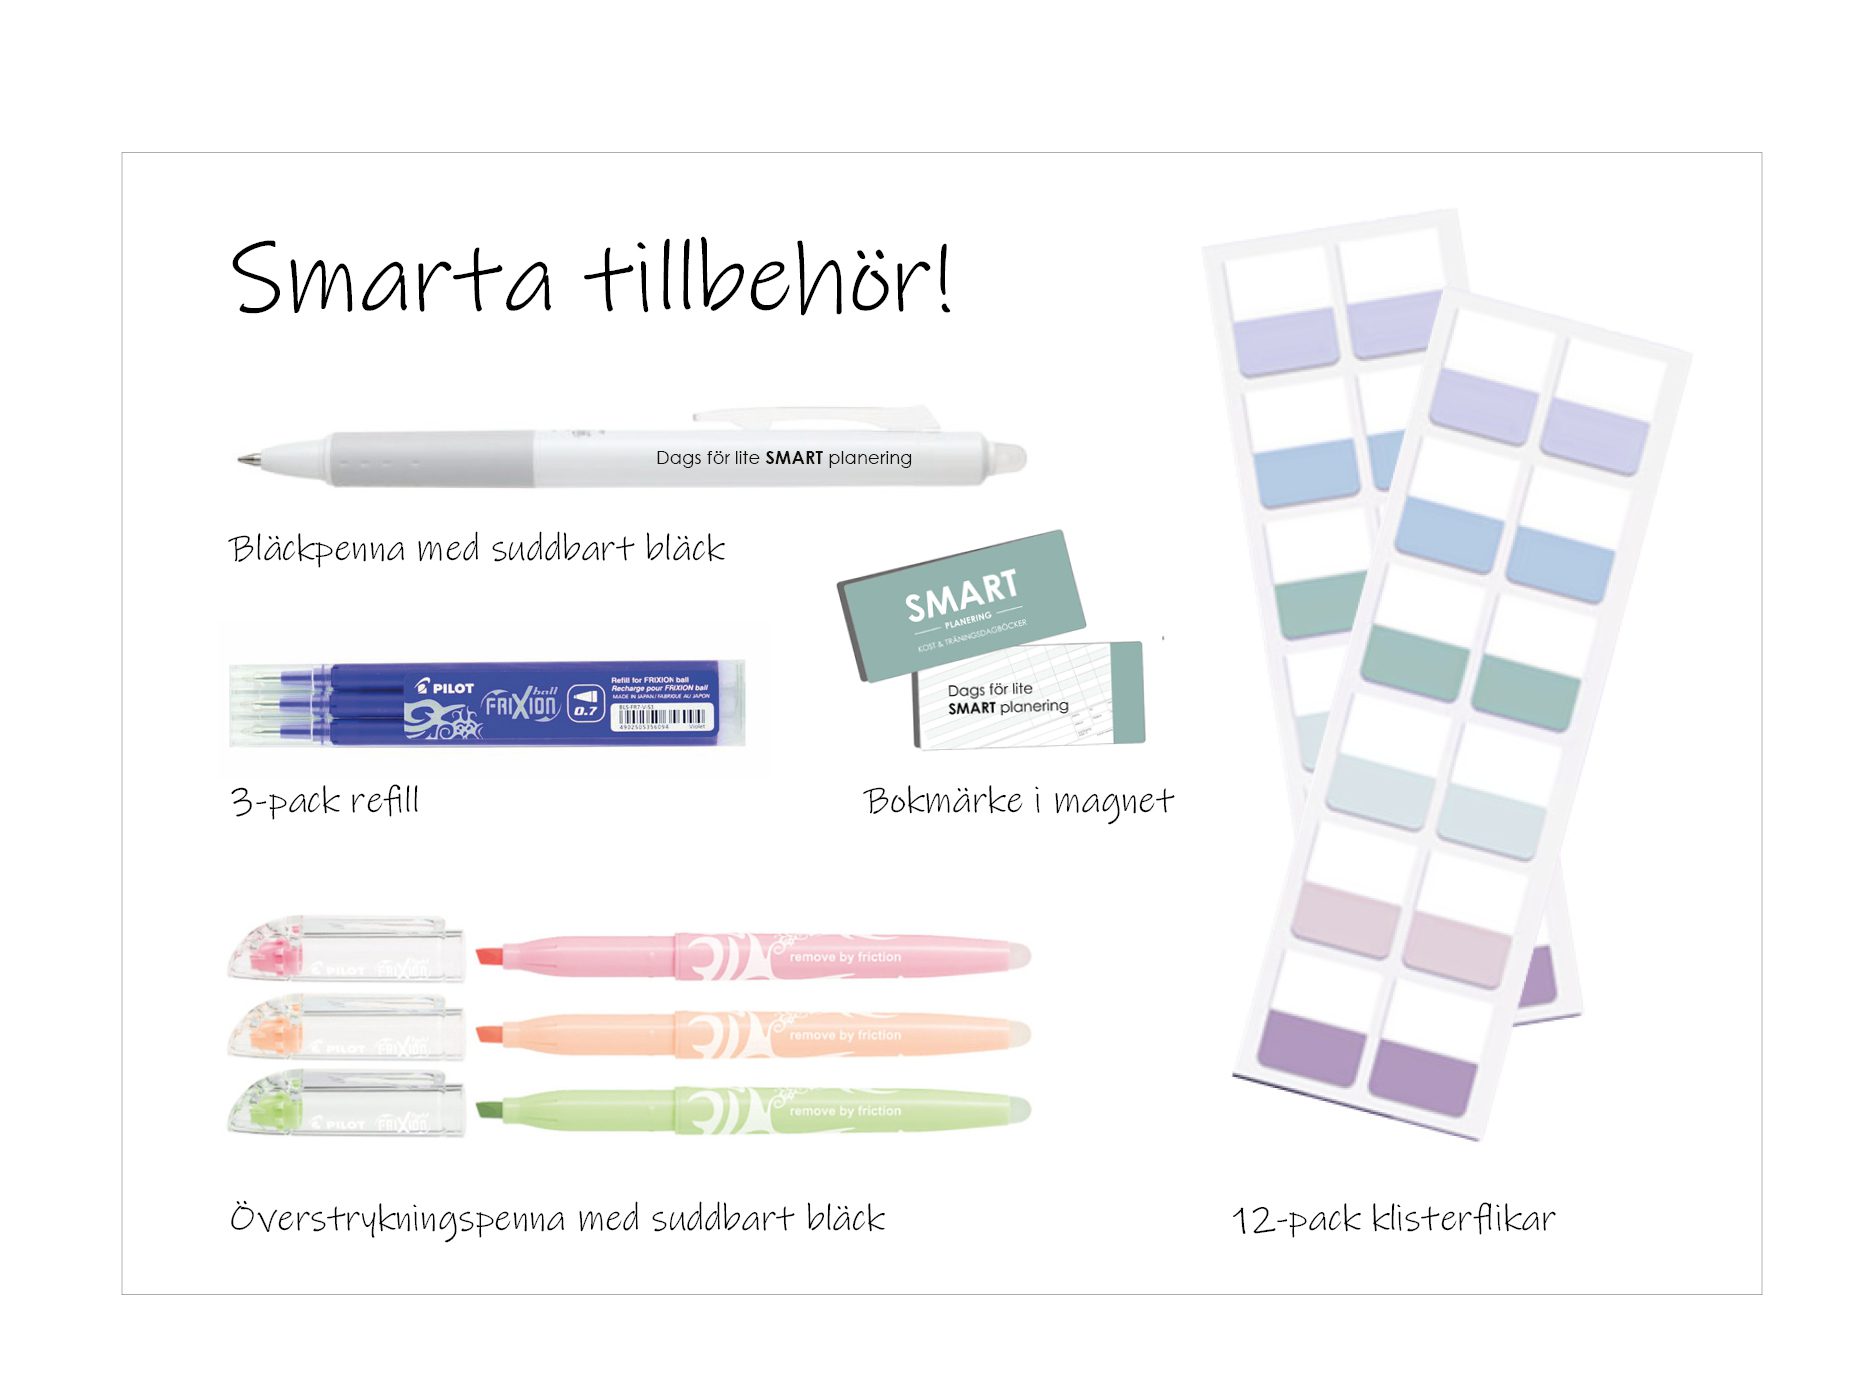 Smarta tillbehör i form av pennor, kliskterflikar, bokmärken, refill till bläckpennan Frixion clicker